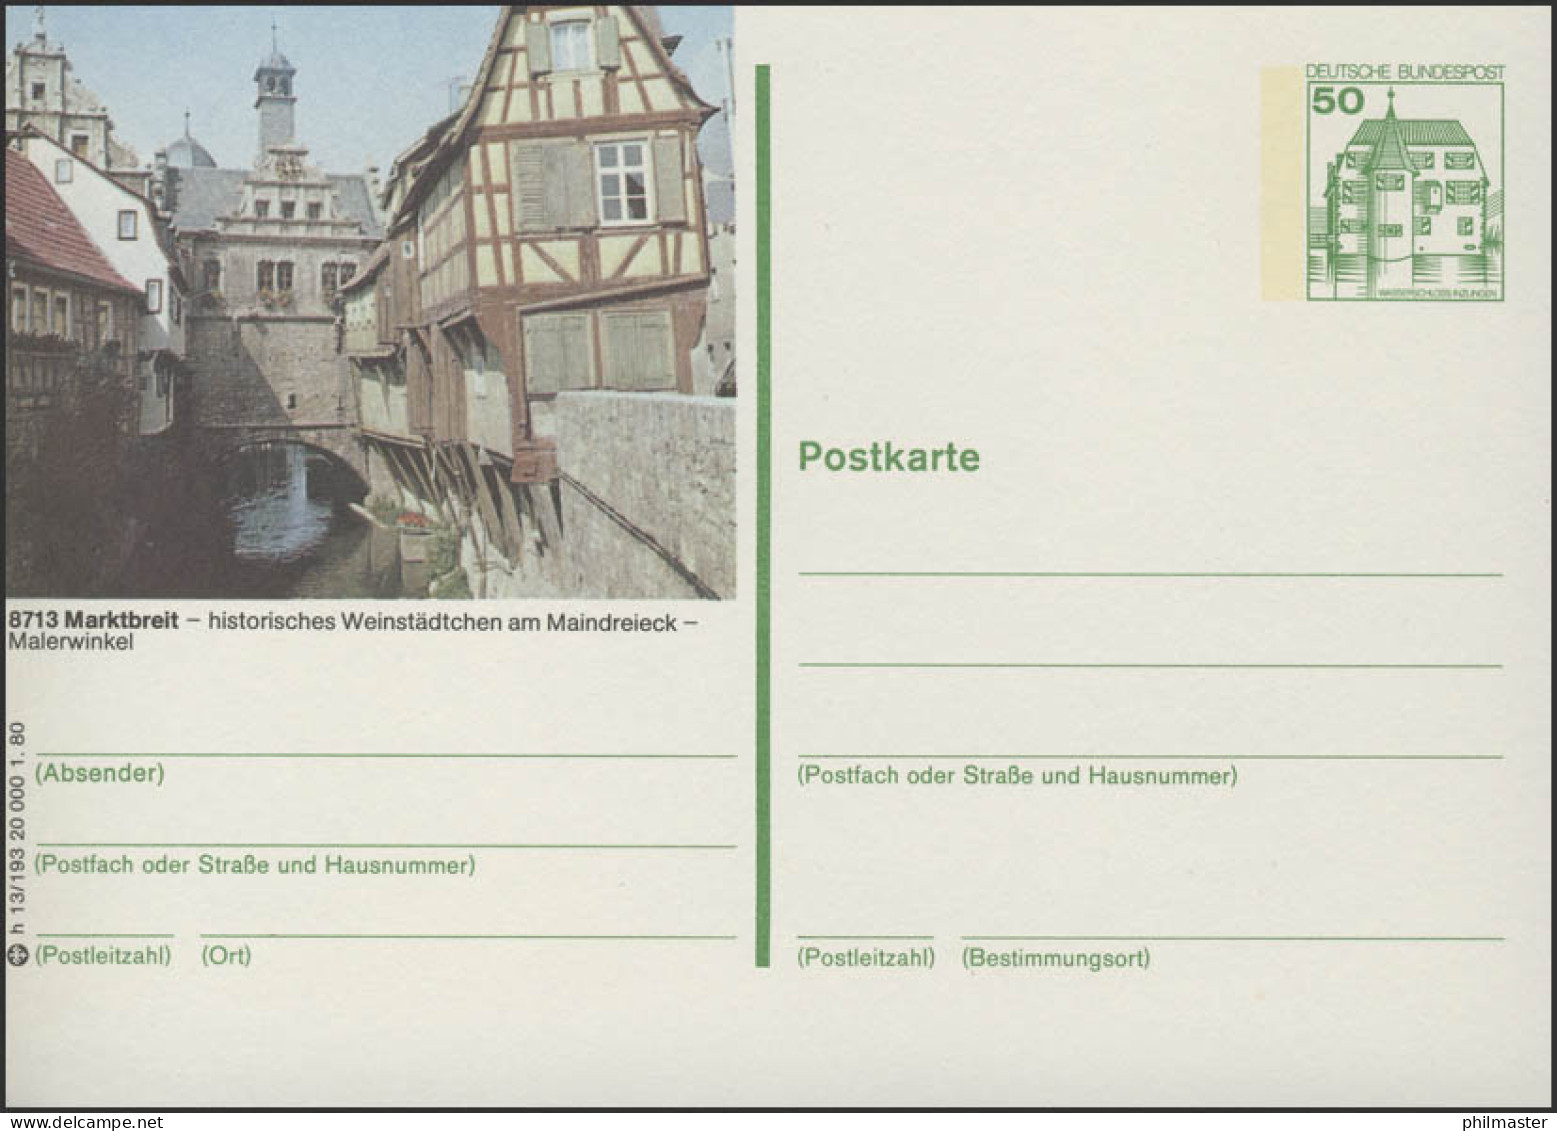 P130-h13/193 - 8713 Marktbreit, Malerwinkel ** - Bildpostkarten - Ungebraucht